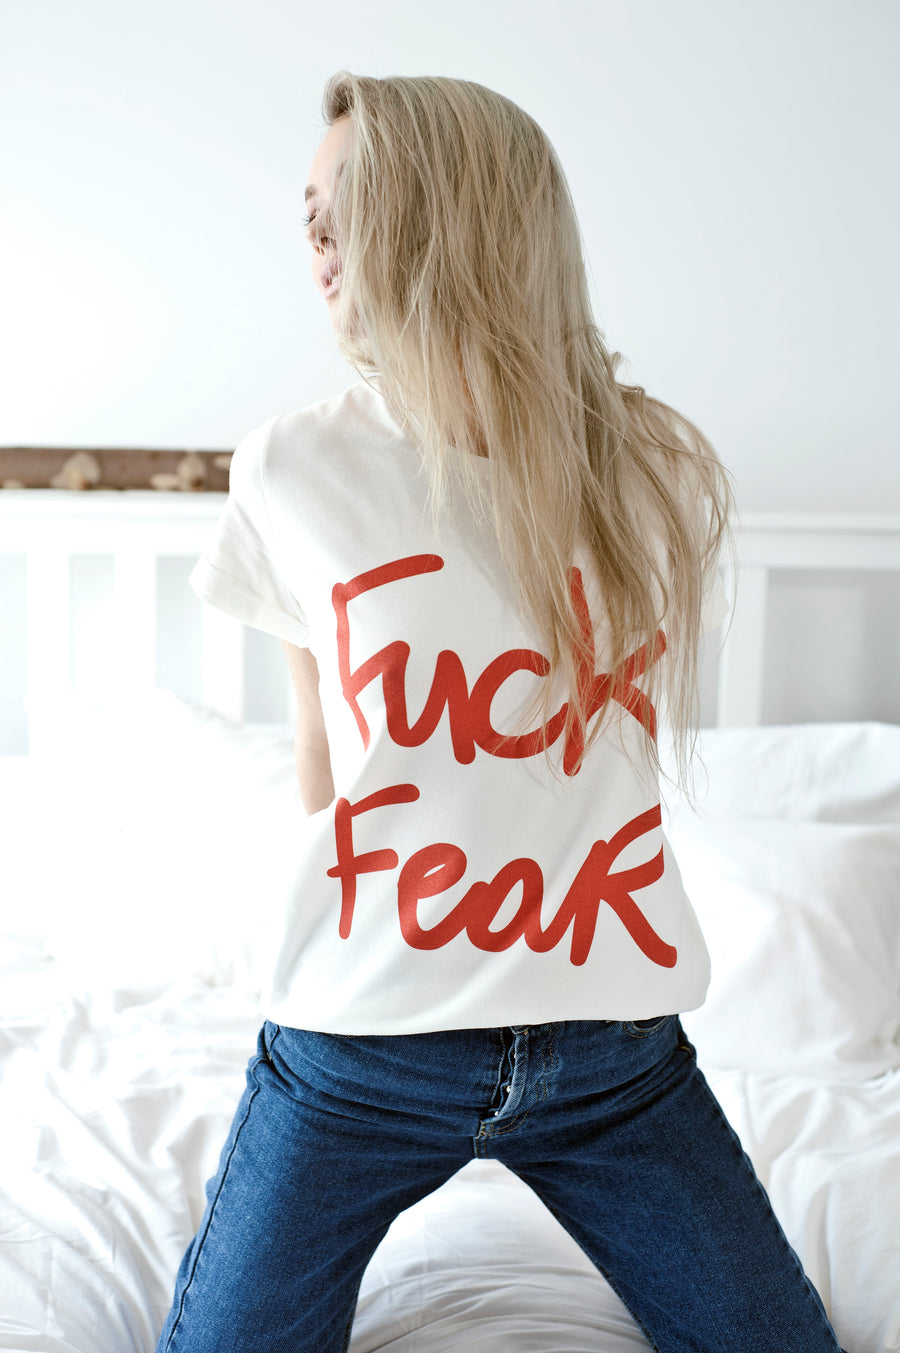 FUCK FEAR Tshirt